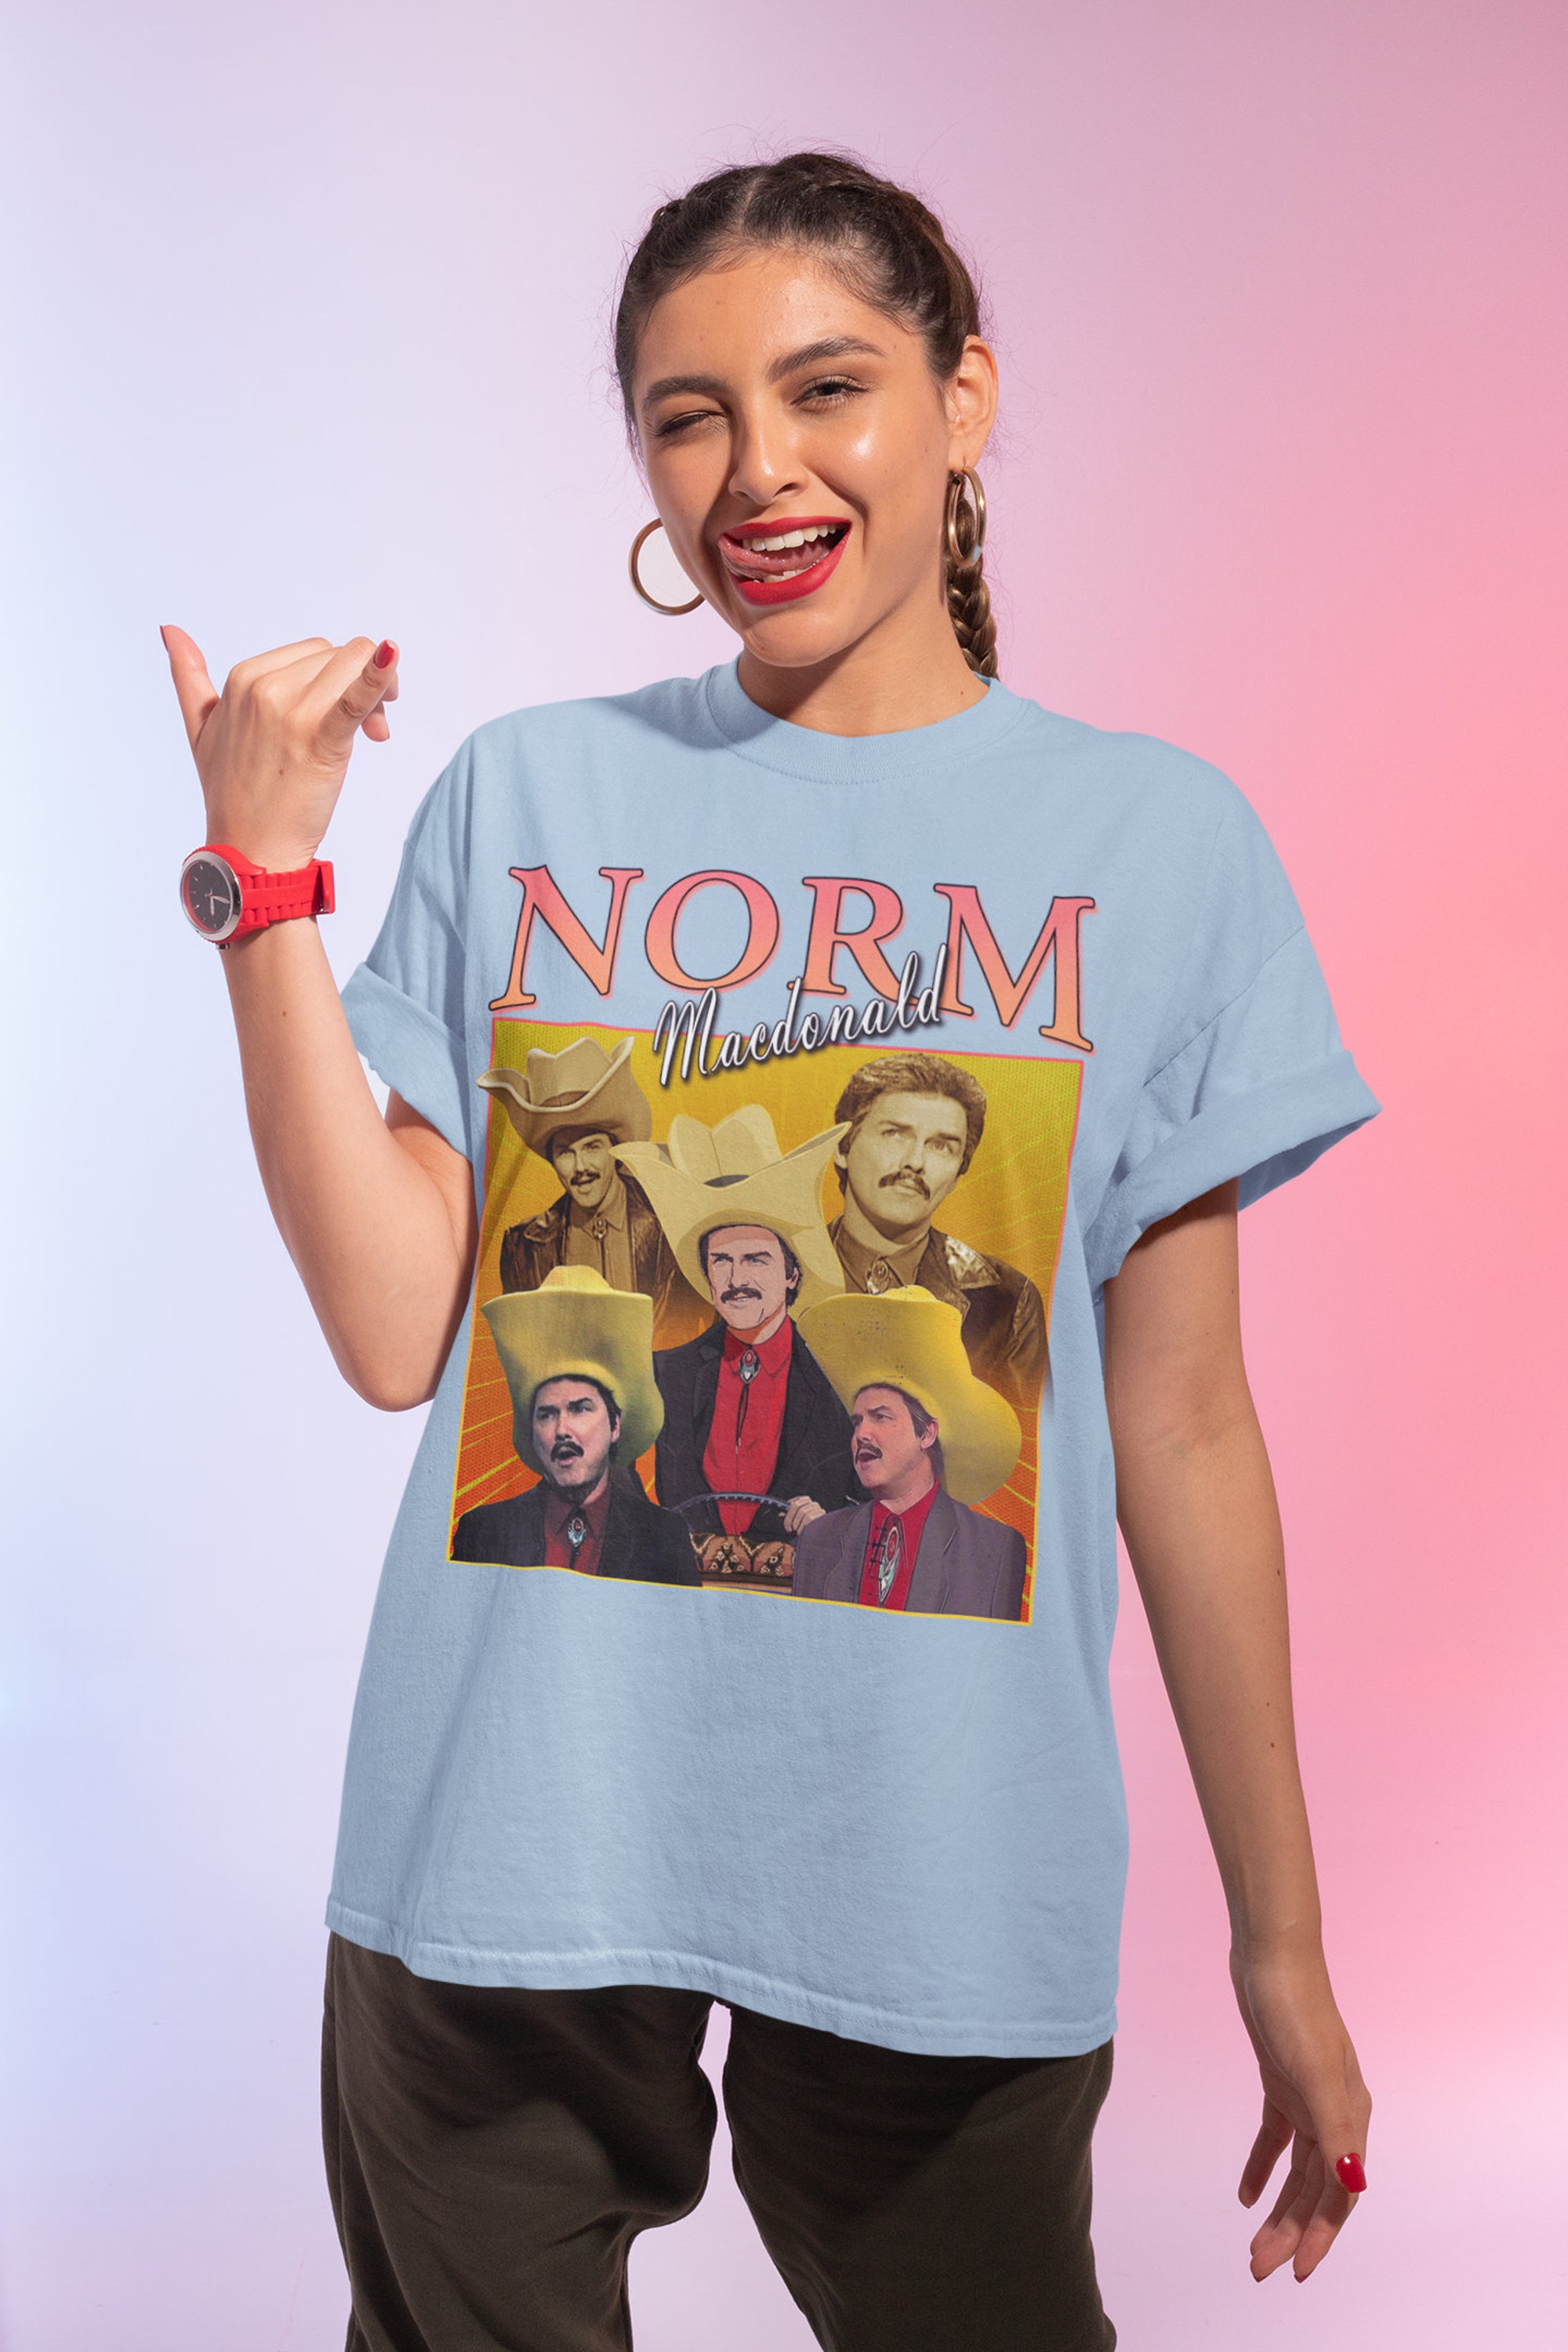 Discover Norm Macdonald Vintage Unisex Shirt, Vintage Norm Macdonald TShirt